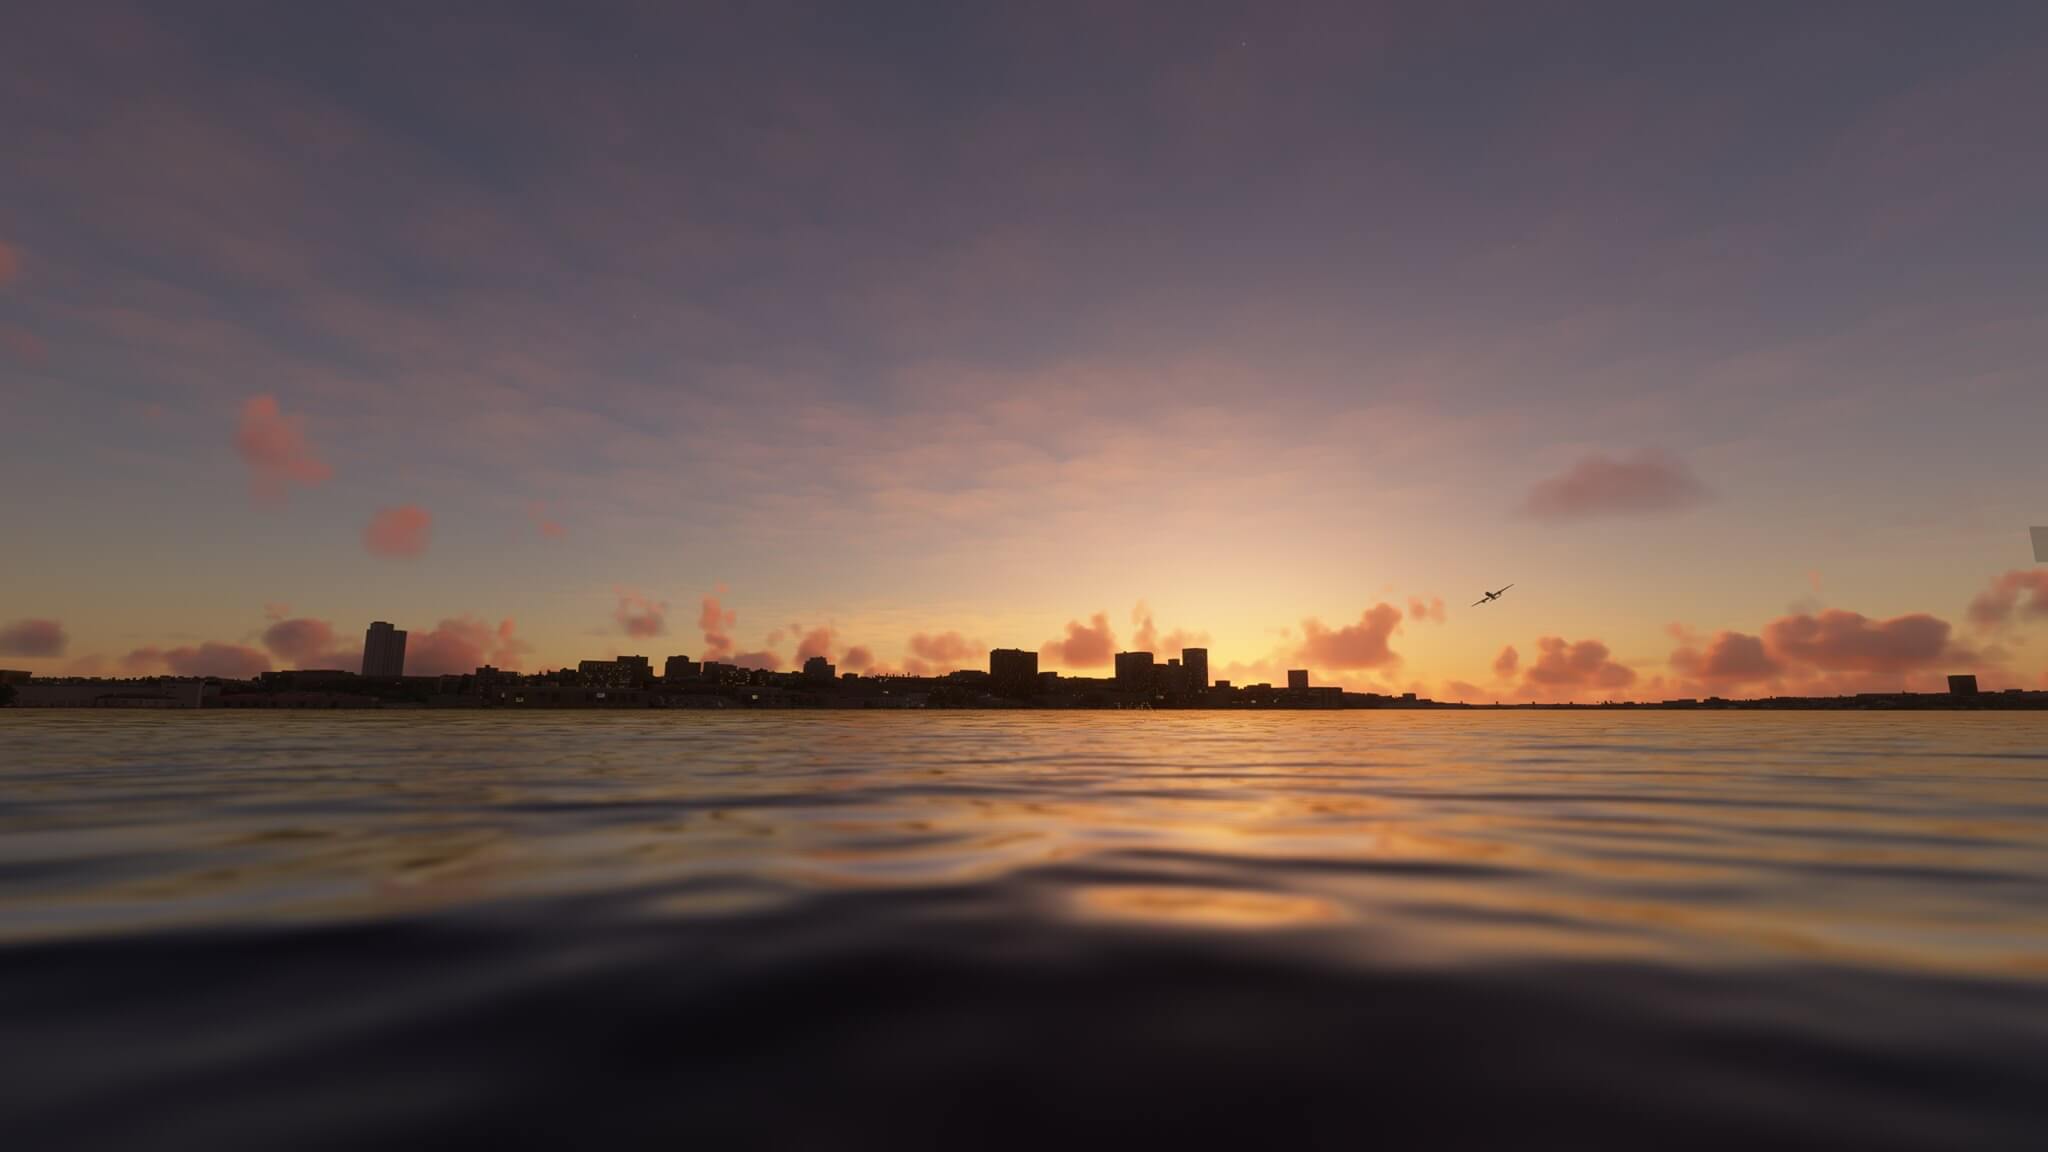 A plane flies over water near a city skyline